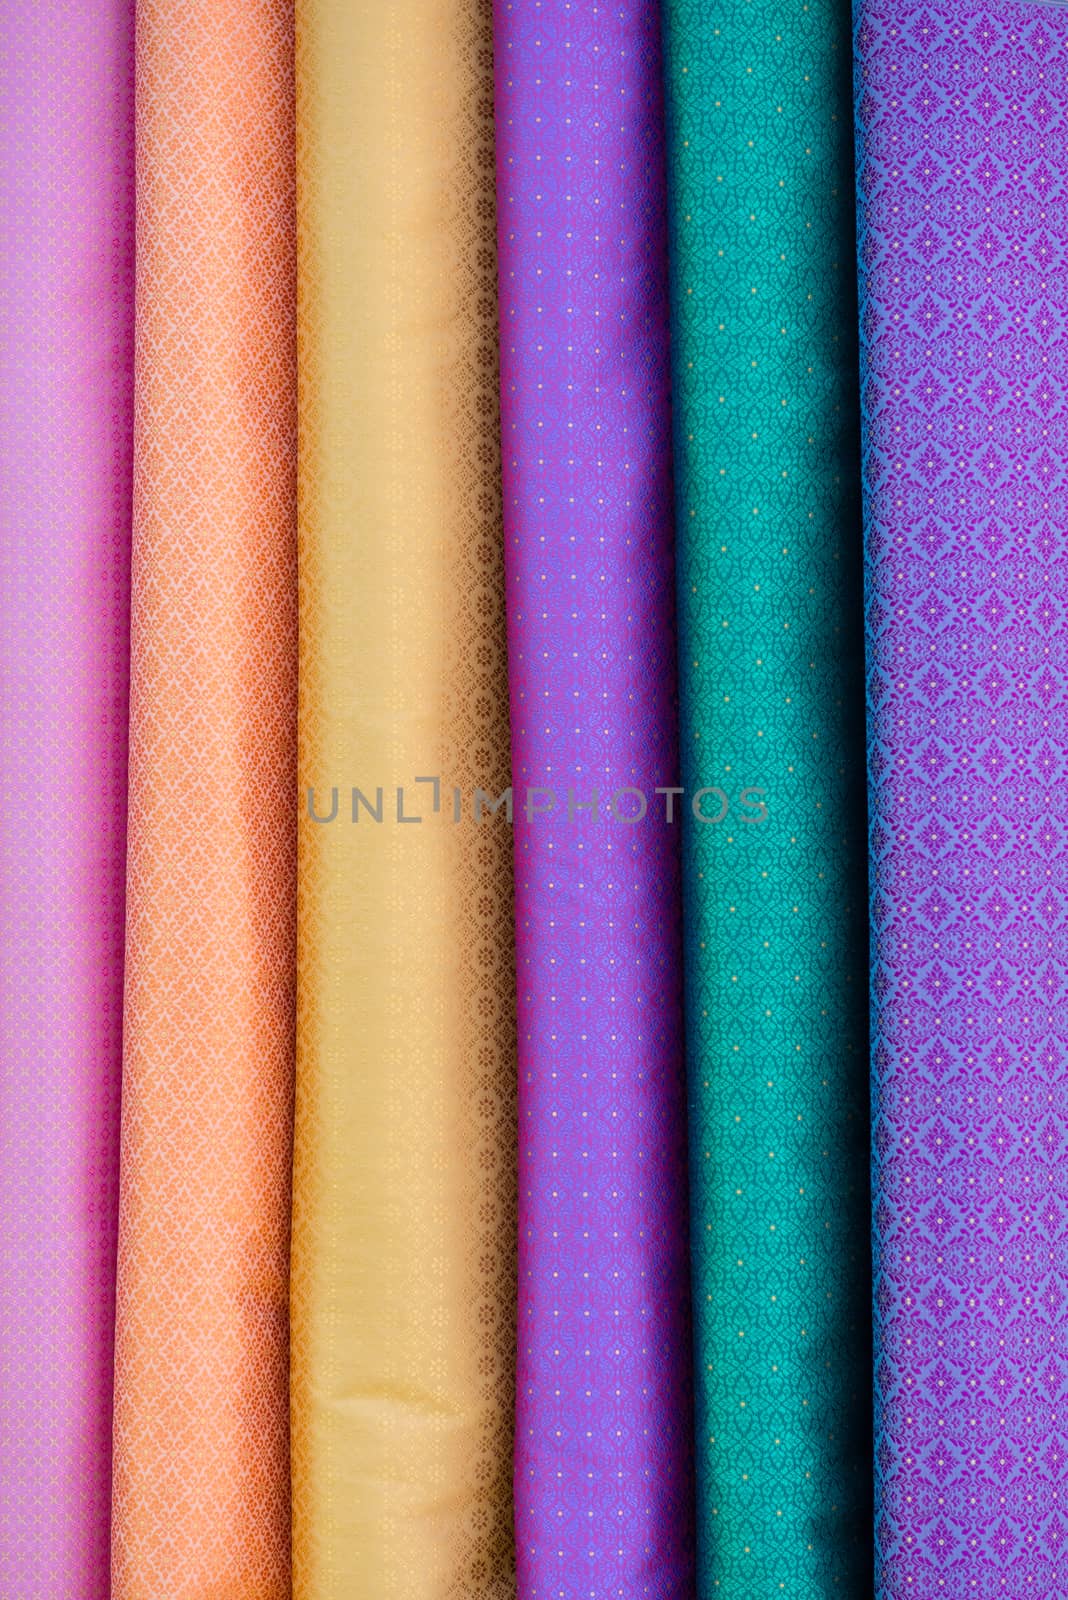 colorful Thai fabric, Thai silk